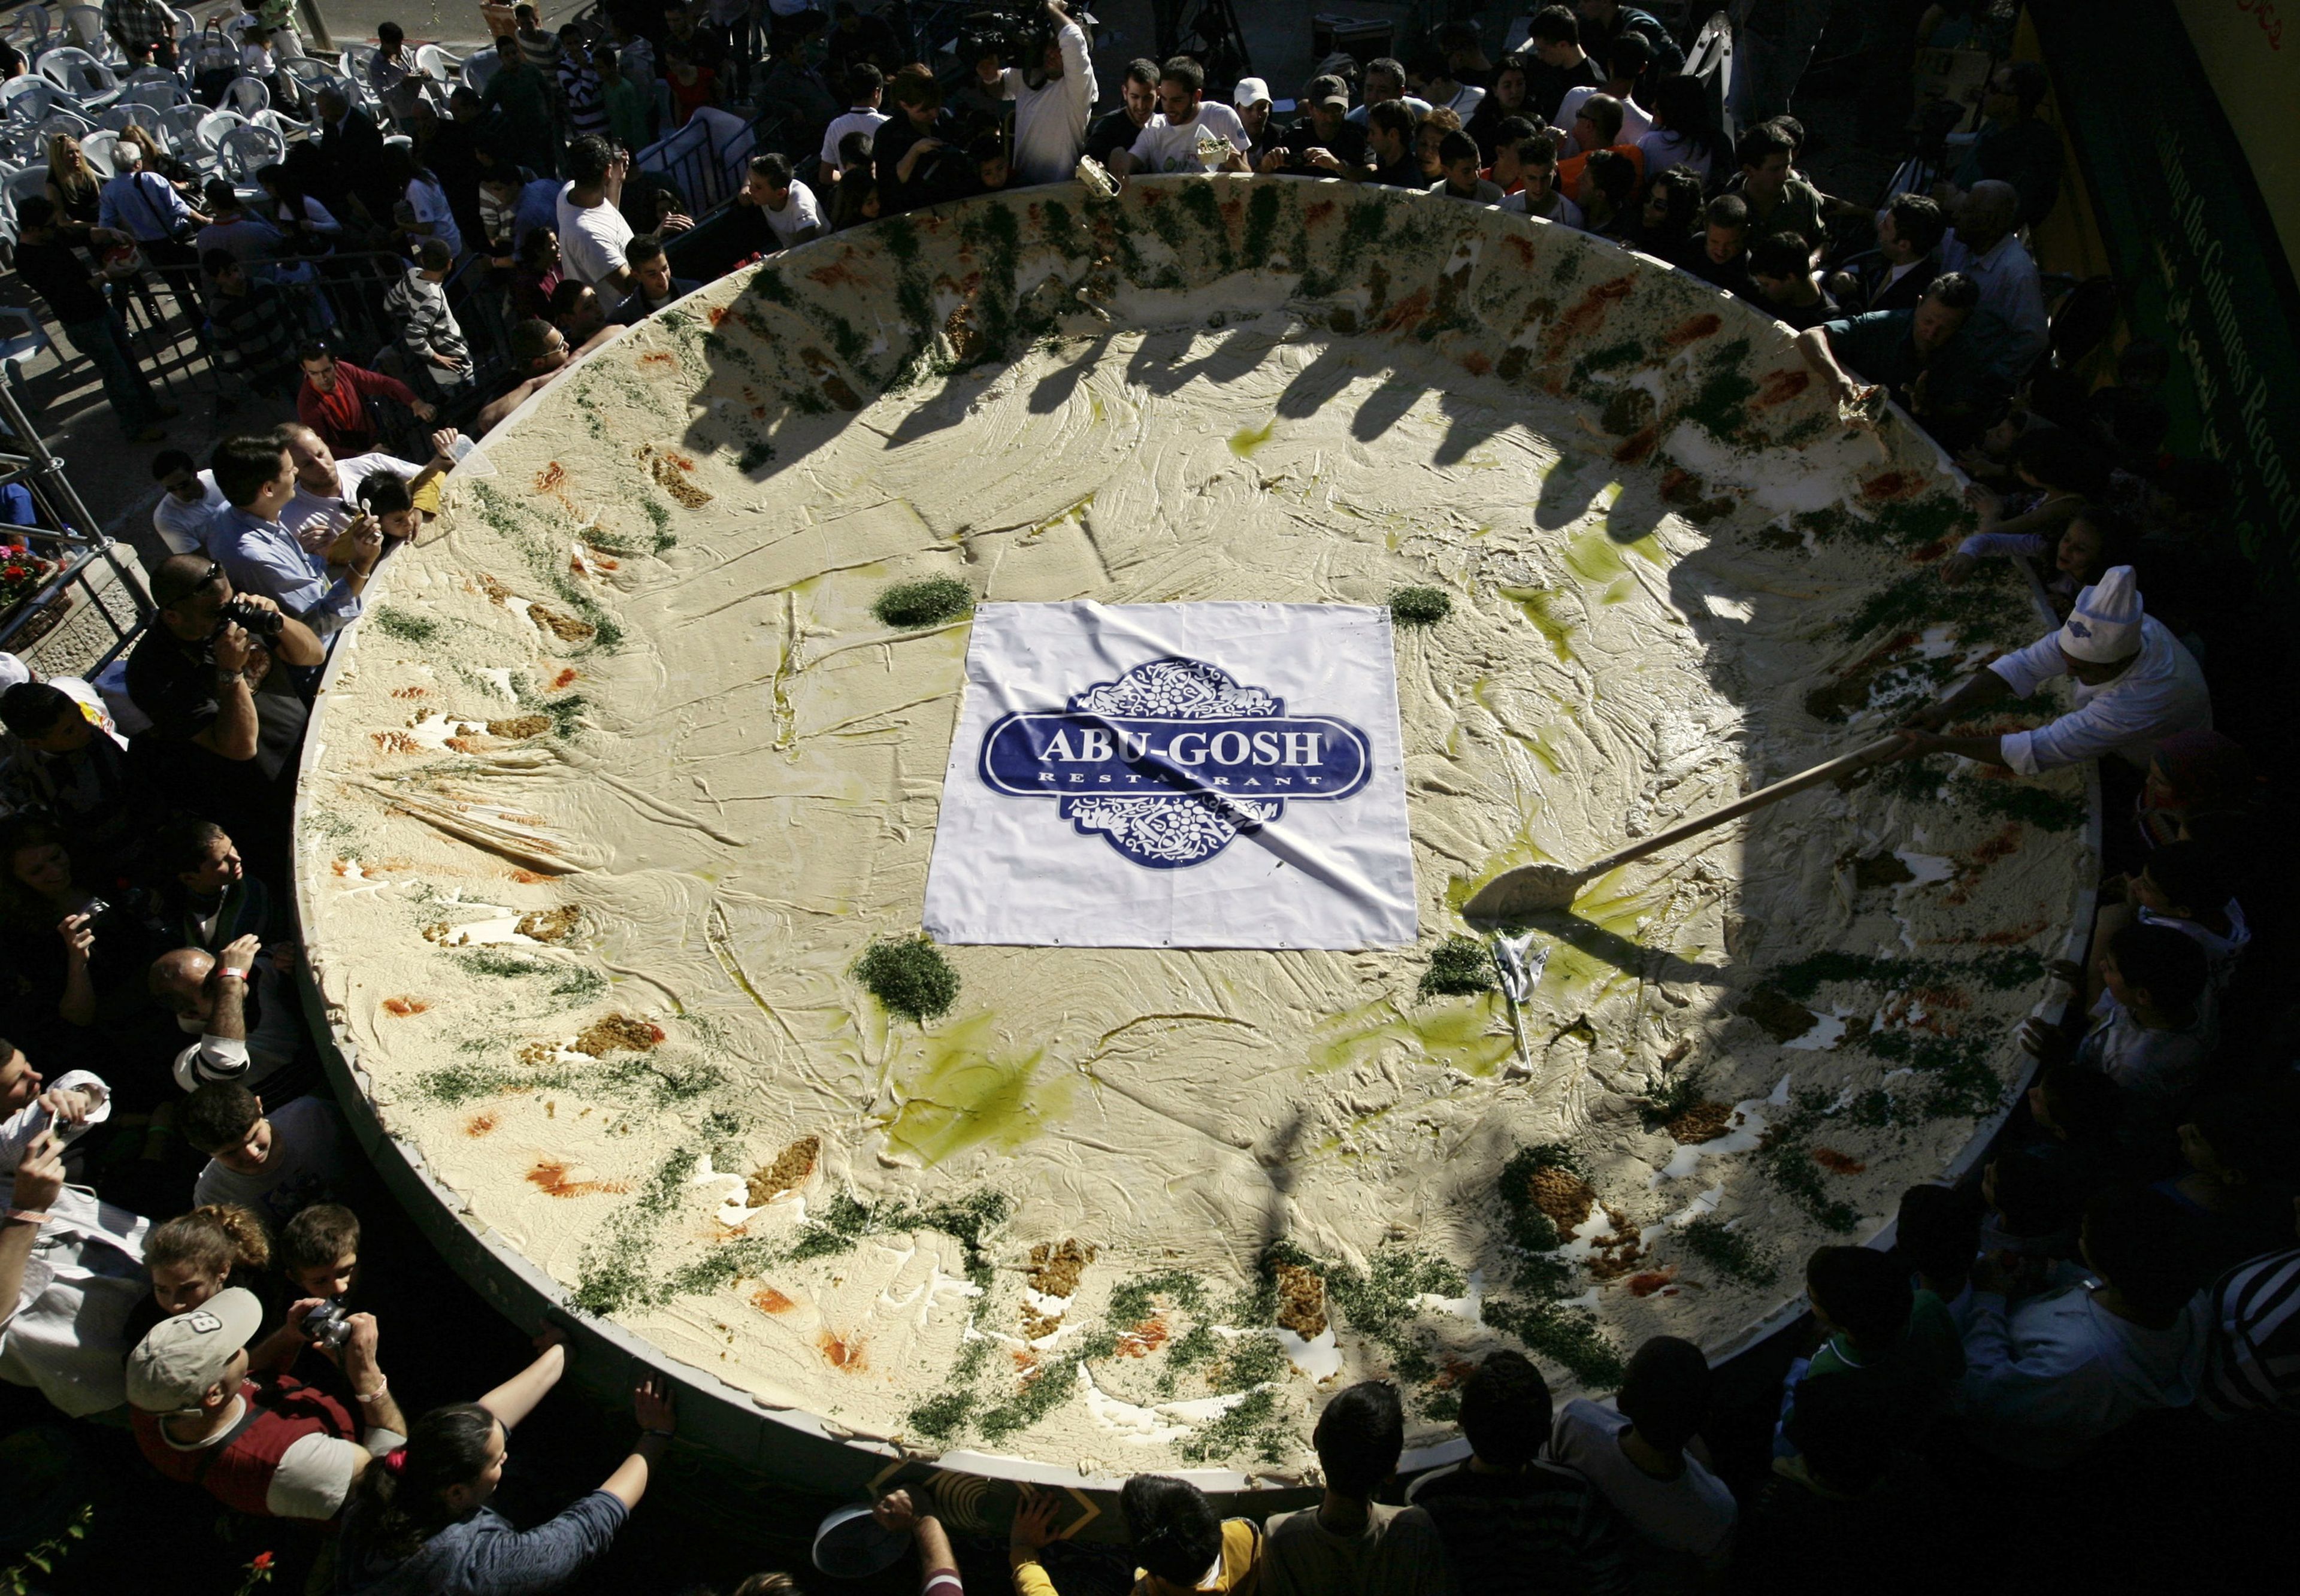 Preparación de 4.000 kilos de hummus en Abu-Gosh (Reuters)